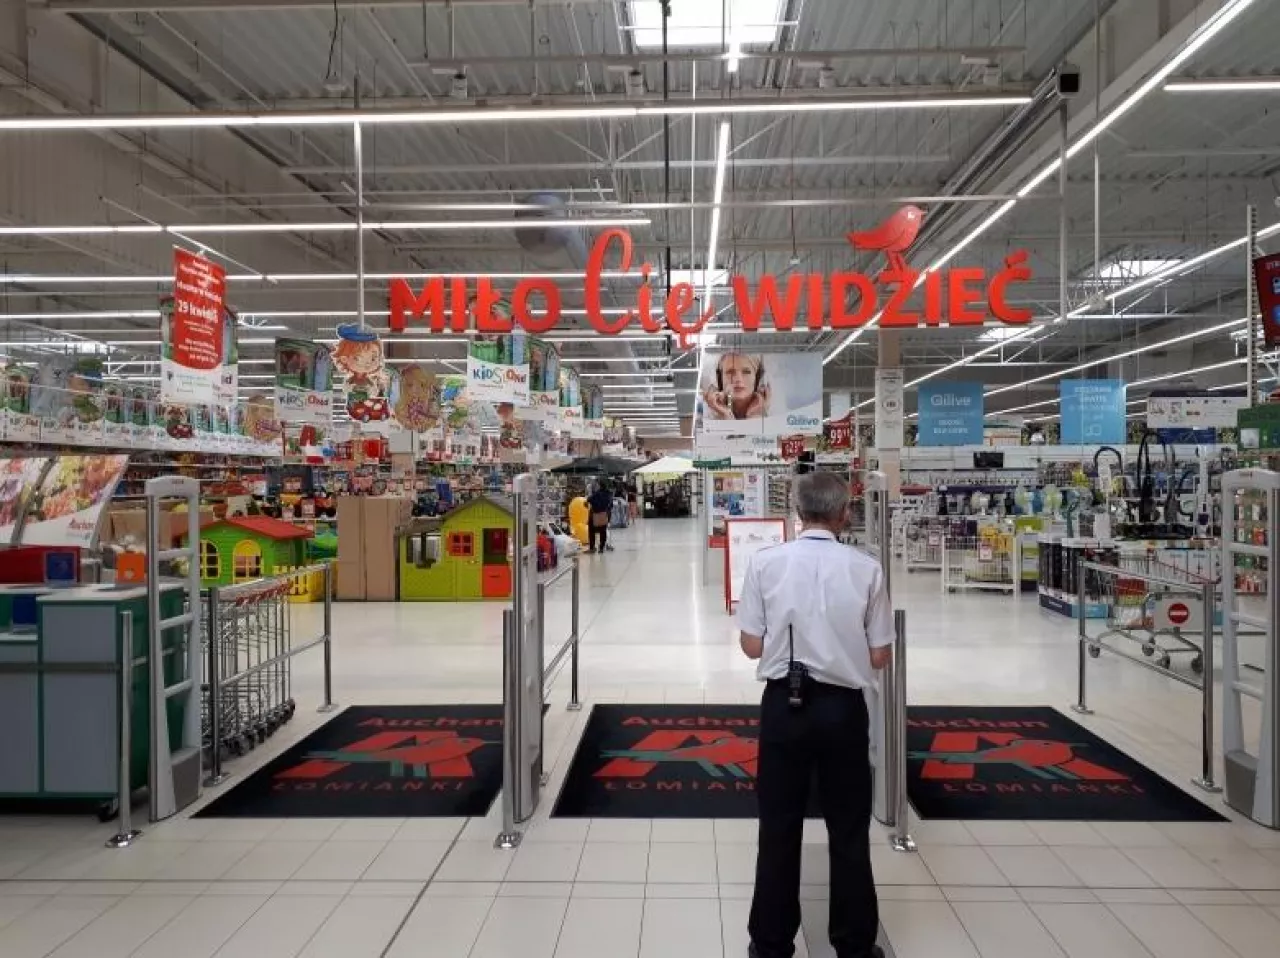 Zmodernizowany hipermarket Auchan w Galerii Łomianki (fot. wiadomoscihandlowe.pl)